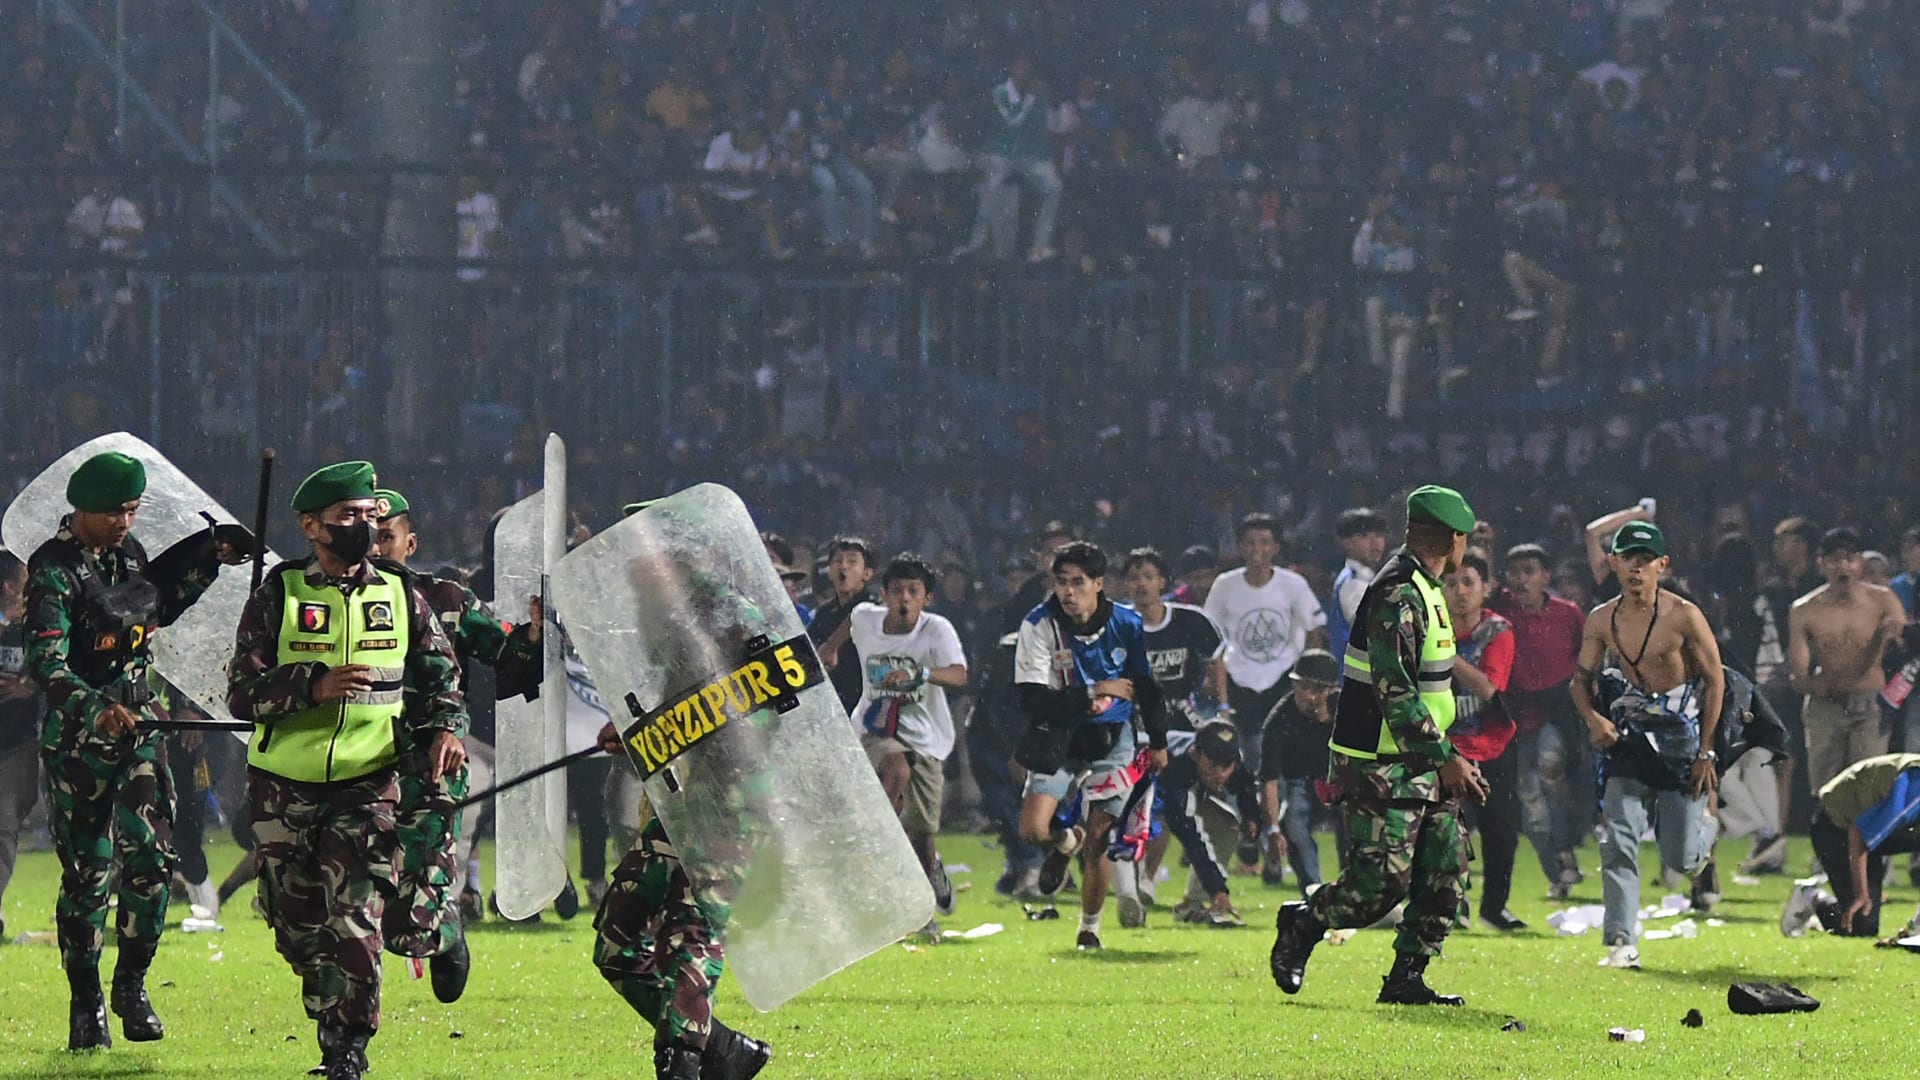 شاهد كيف بدأت كارثة مباراة كرة القدم المميتة في إندونيسيا